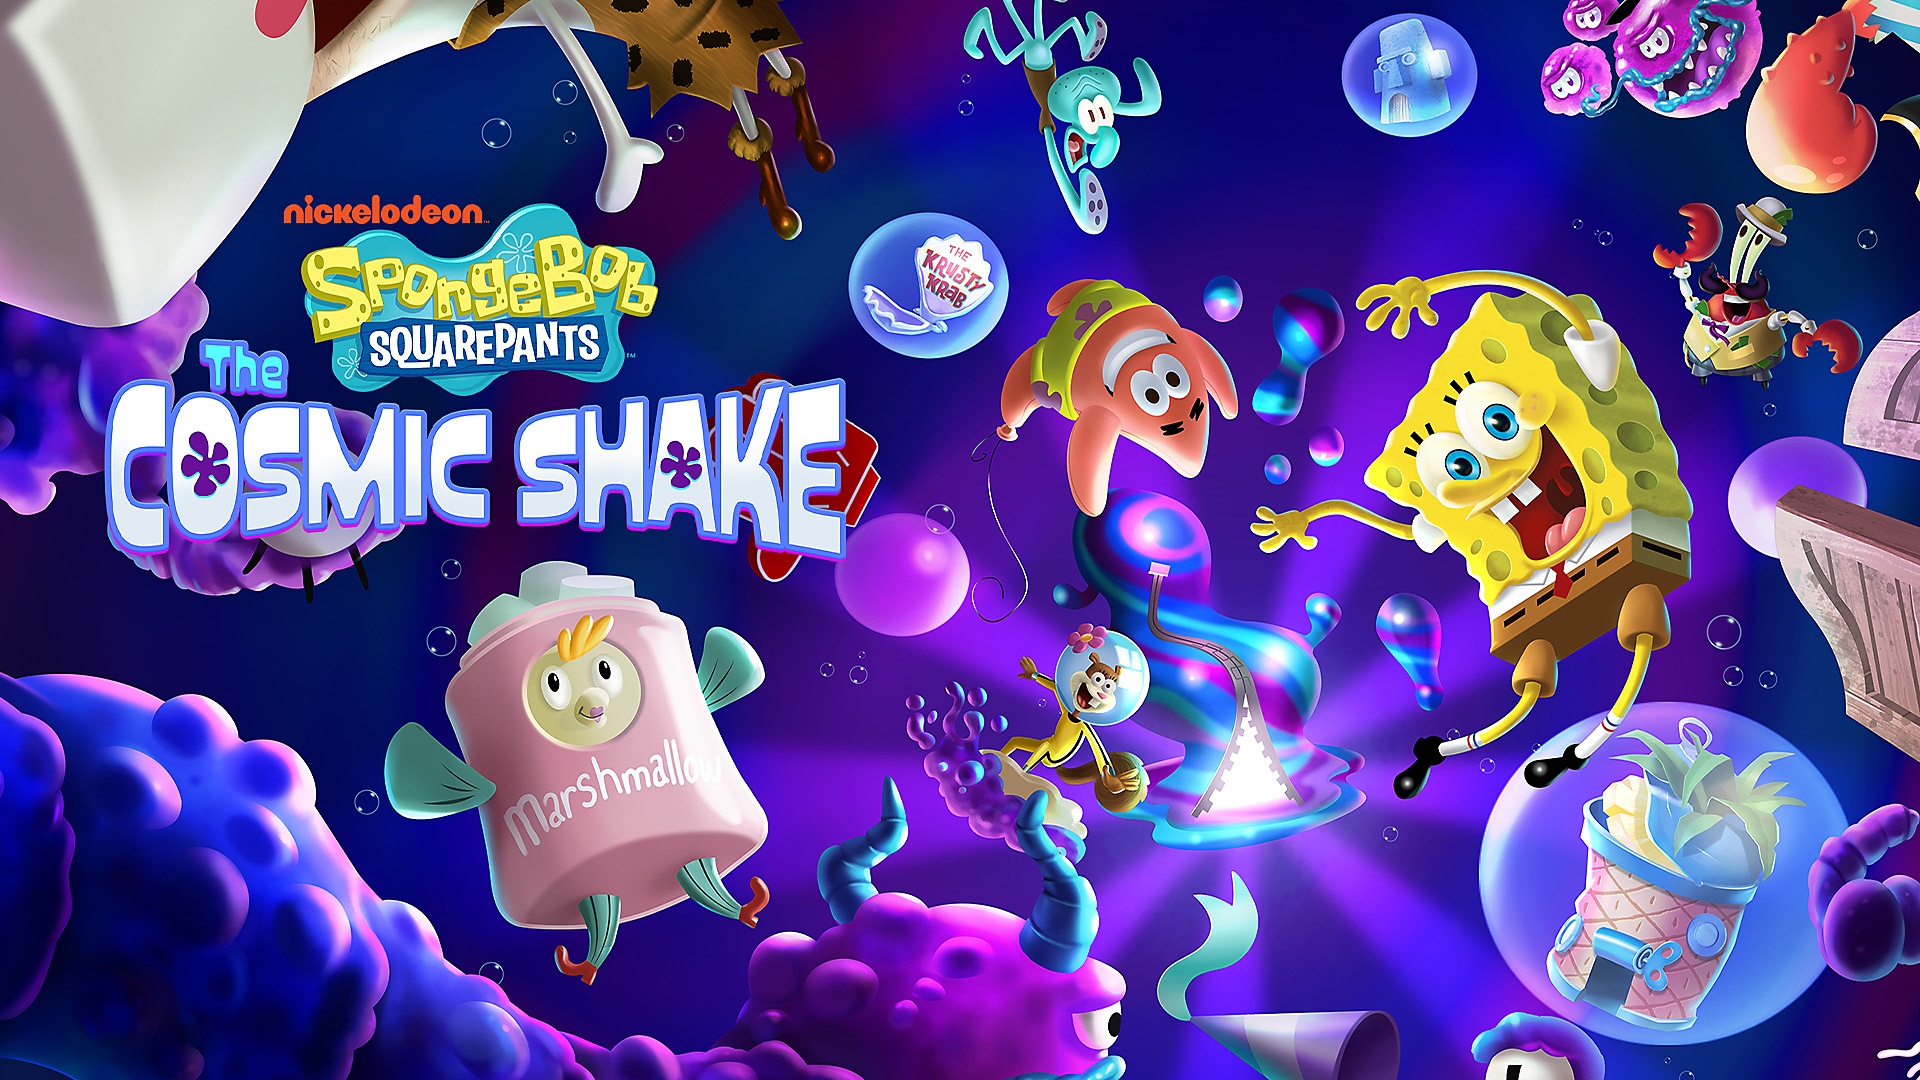 Svampebob, Patrick og andre karakterer som svømmer rundt i undervannsverdenen i SpongeBob SquarePants: The Cosmic Shake på PS4 og PS5